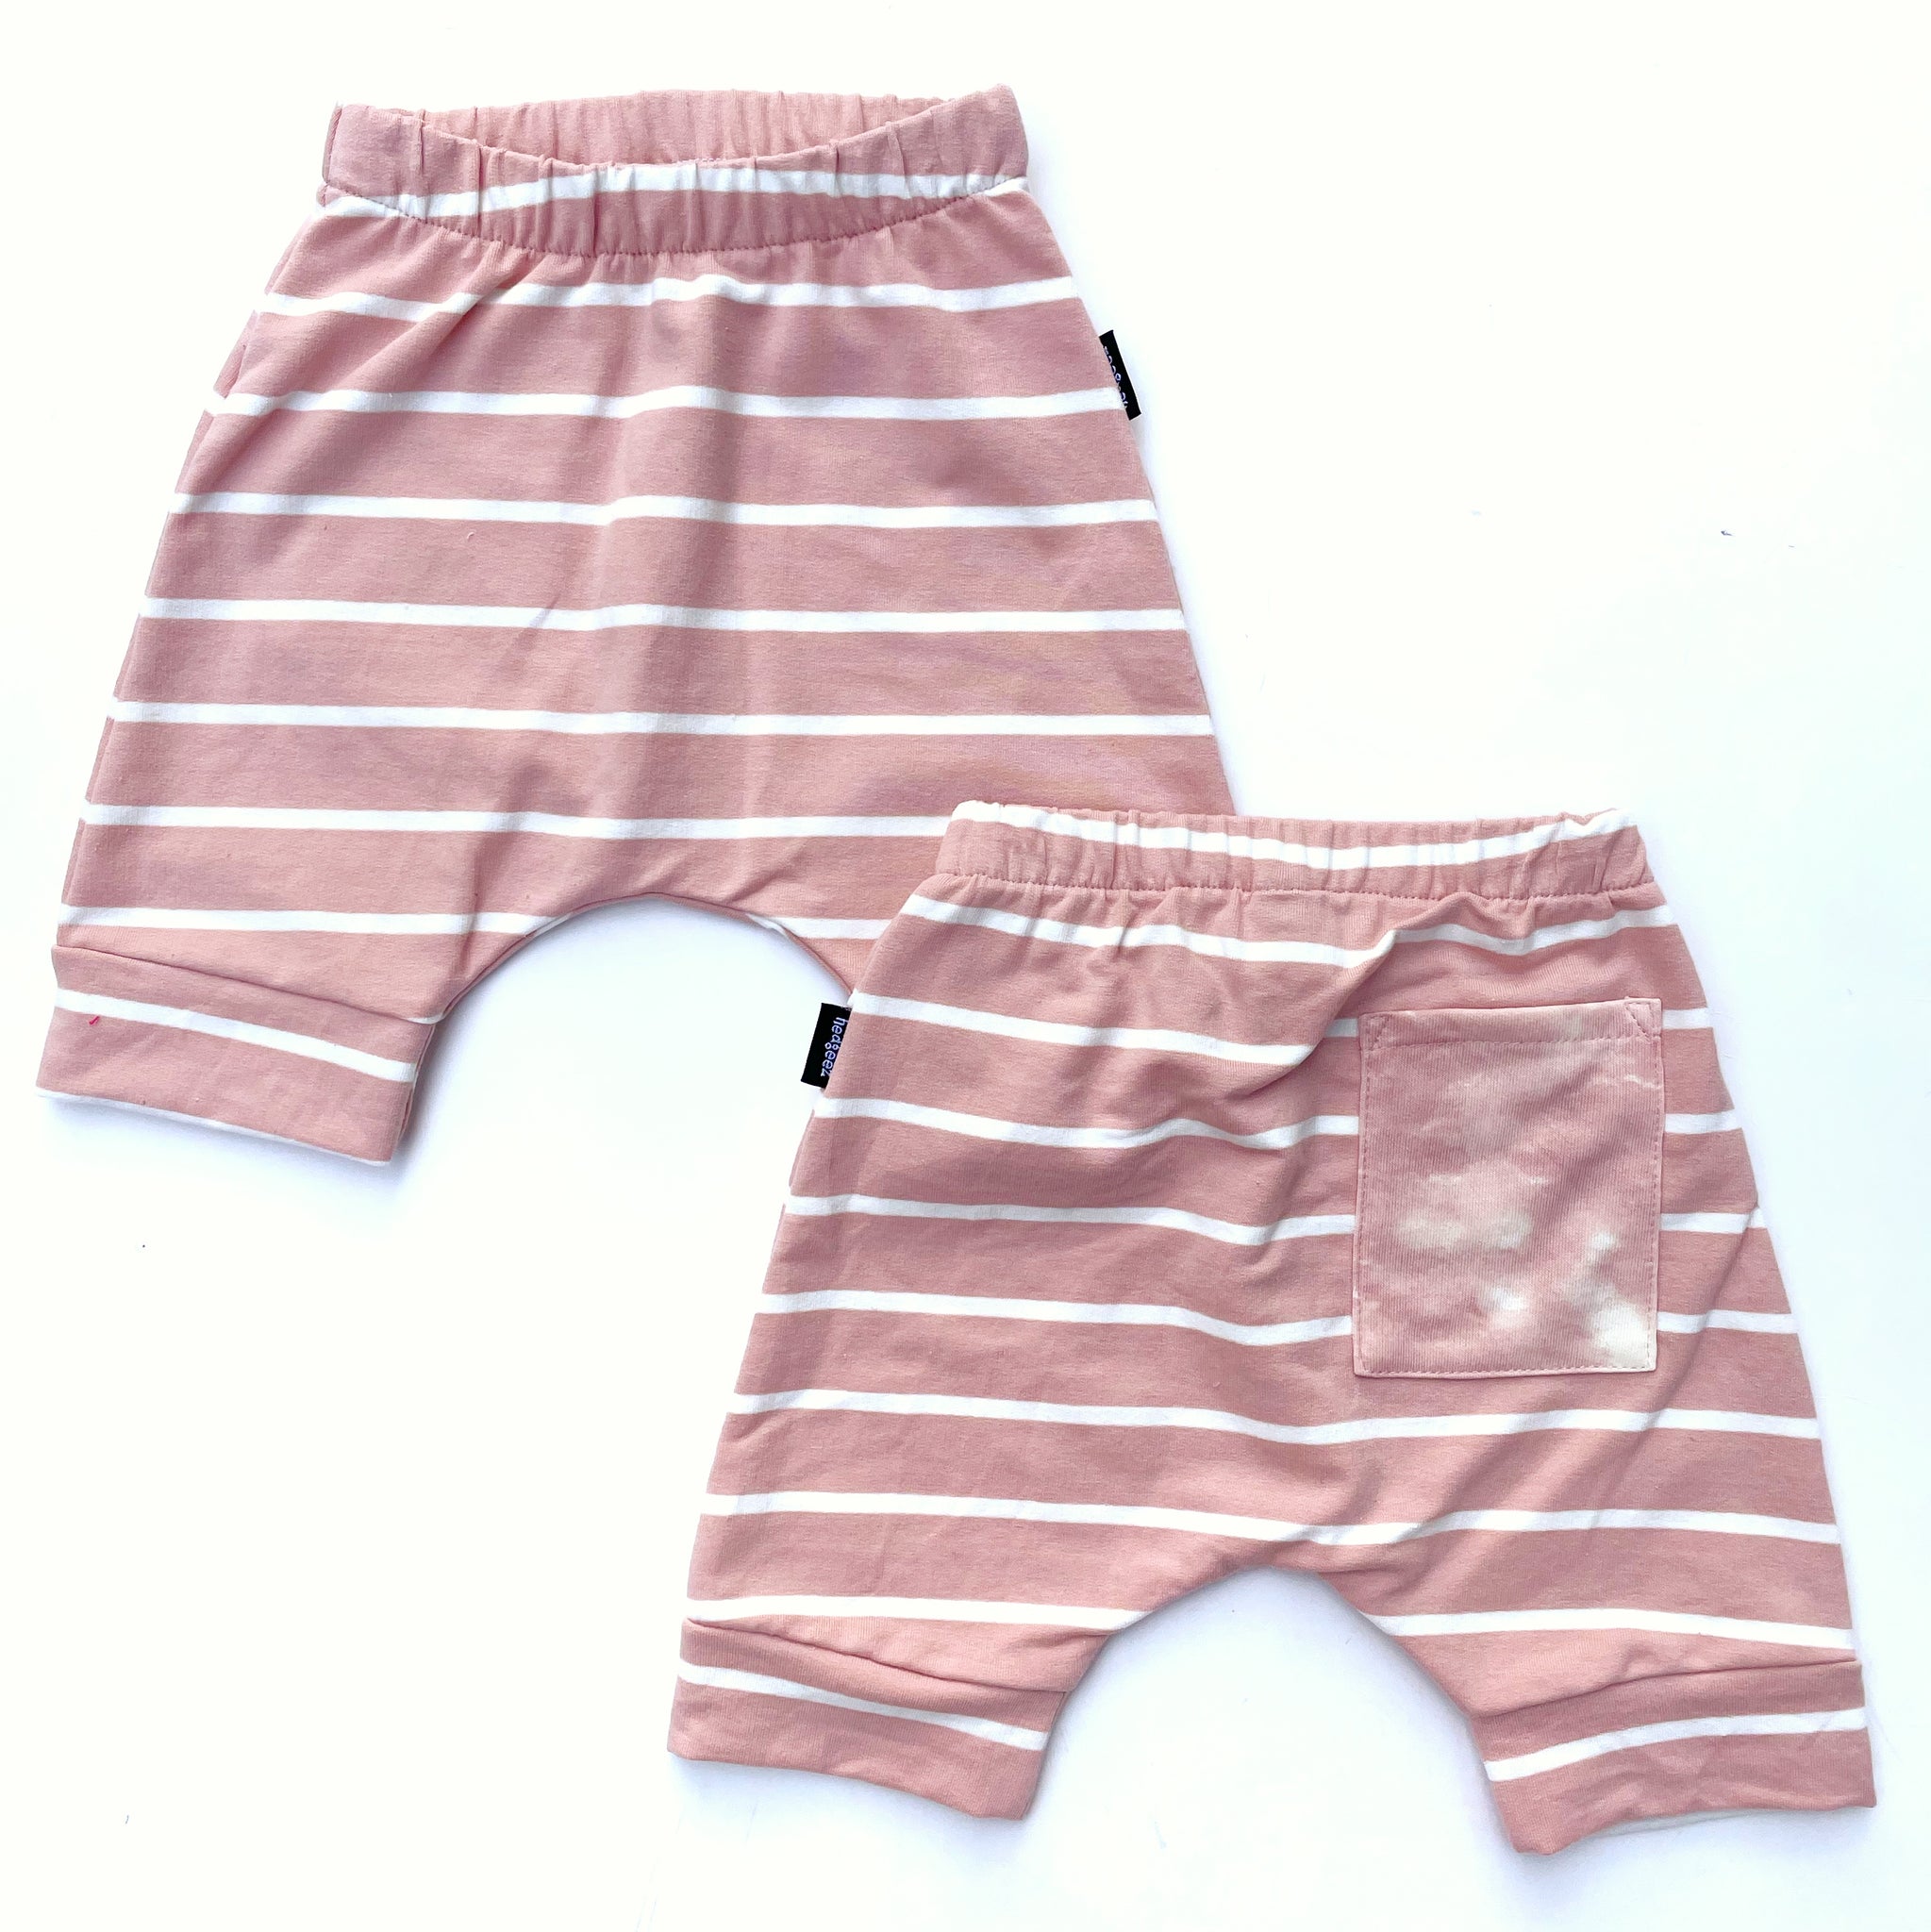 Blush Striped Harem Shorts